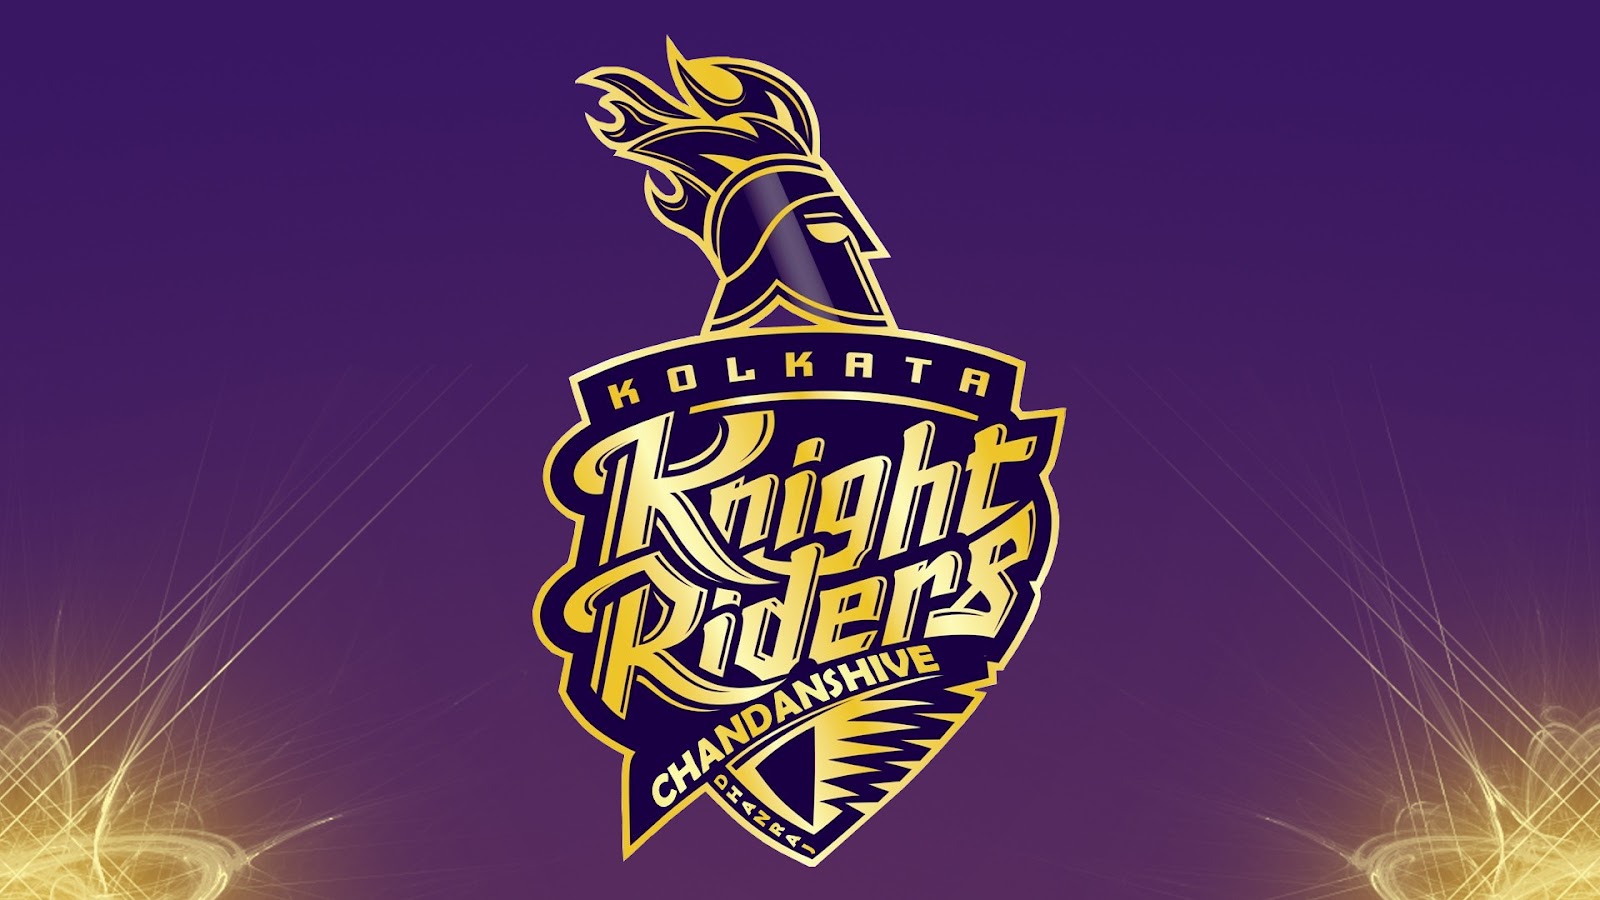 KKR Logo HD, Symbols, Wallpaper 2020. Kolkata Knight Riders